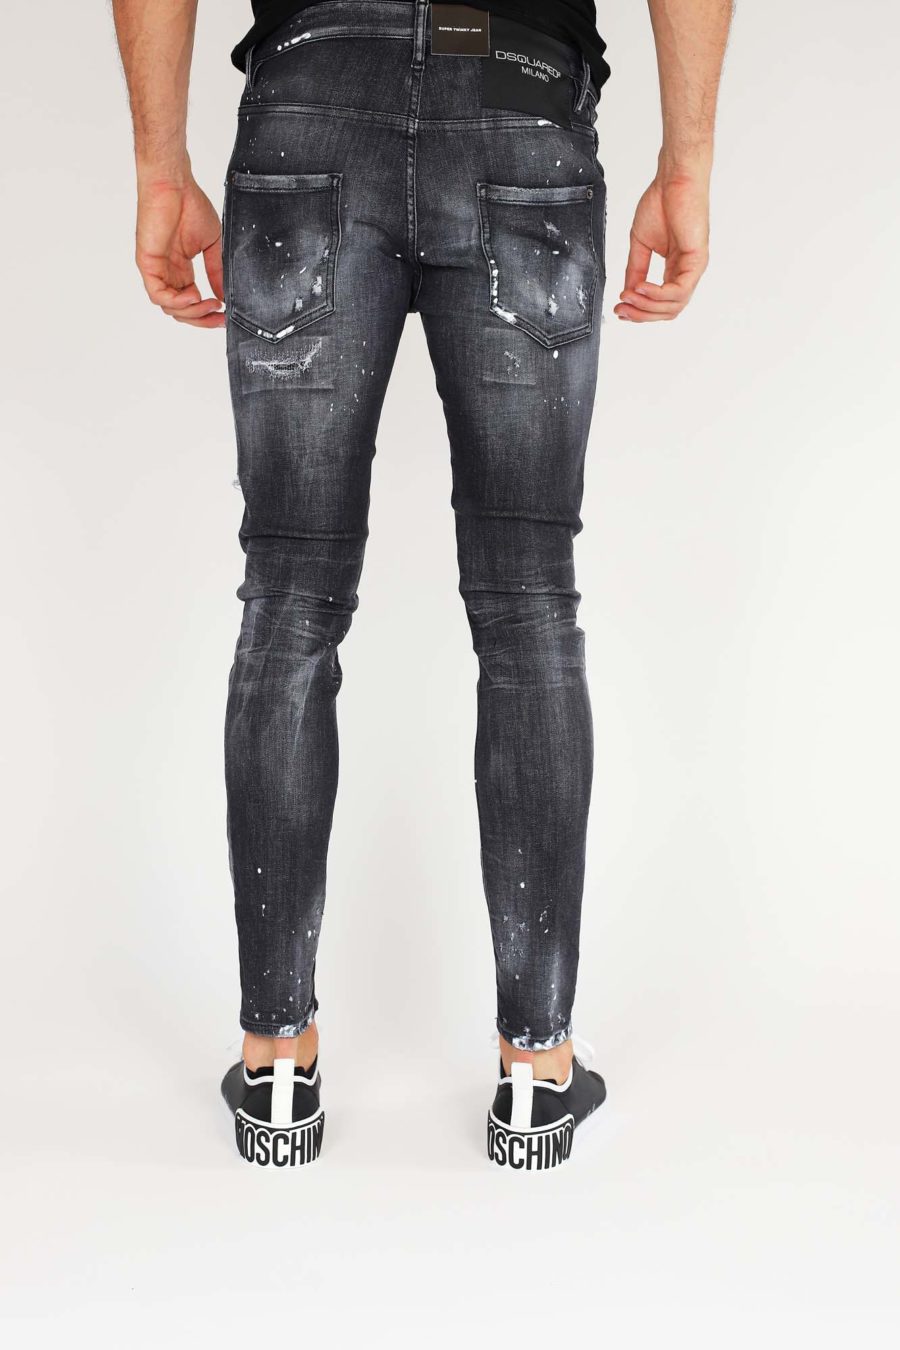 Jeans "Super Twinky Jean" avec fermeture éclair - IMG 9860